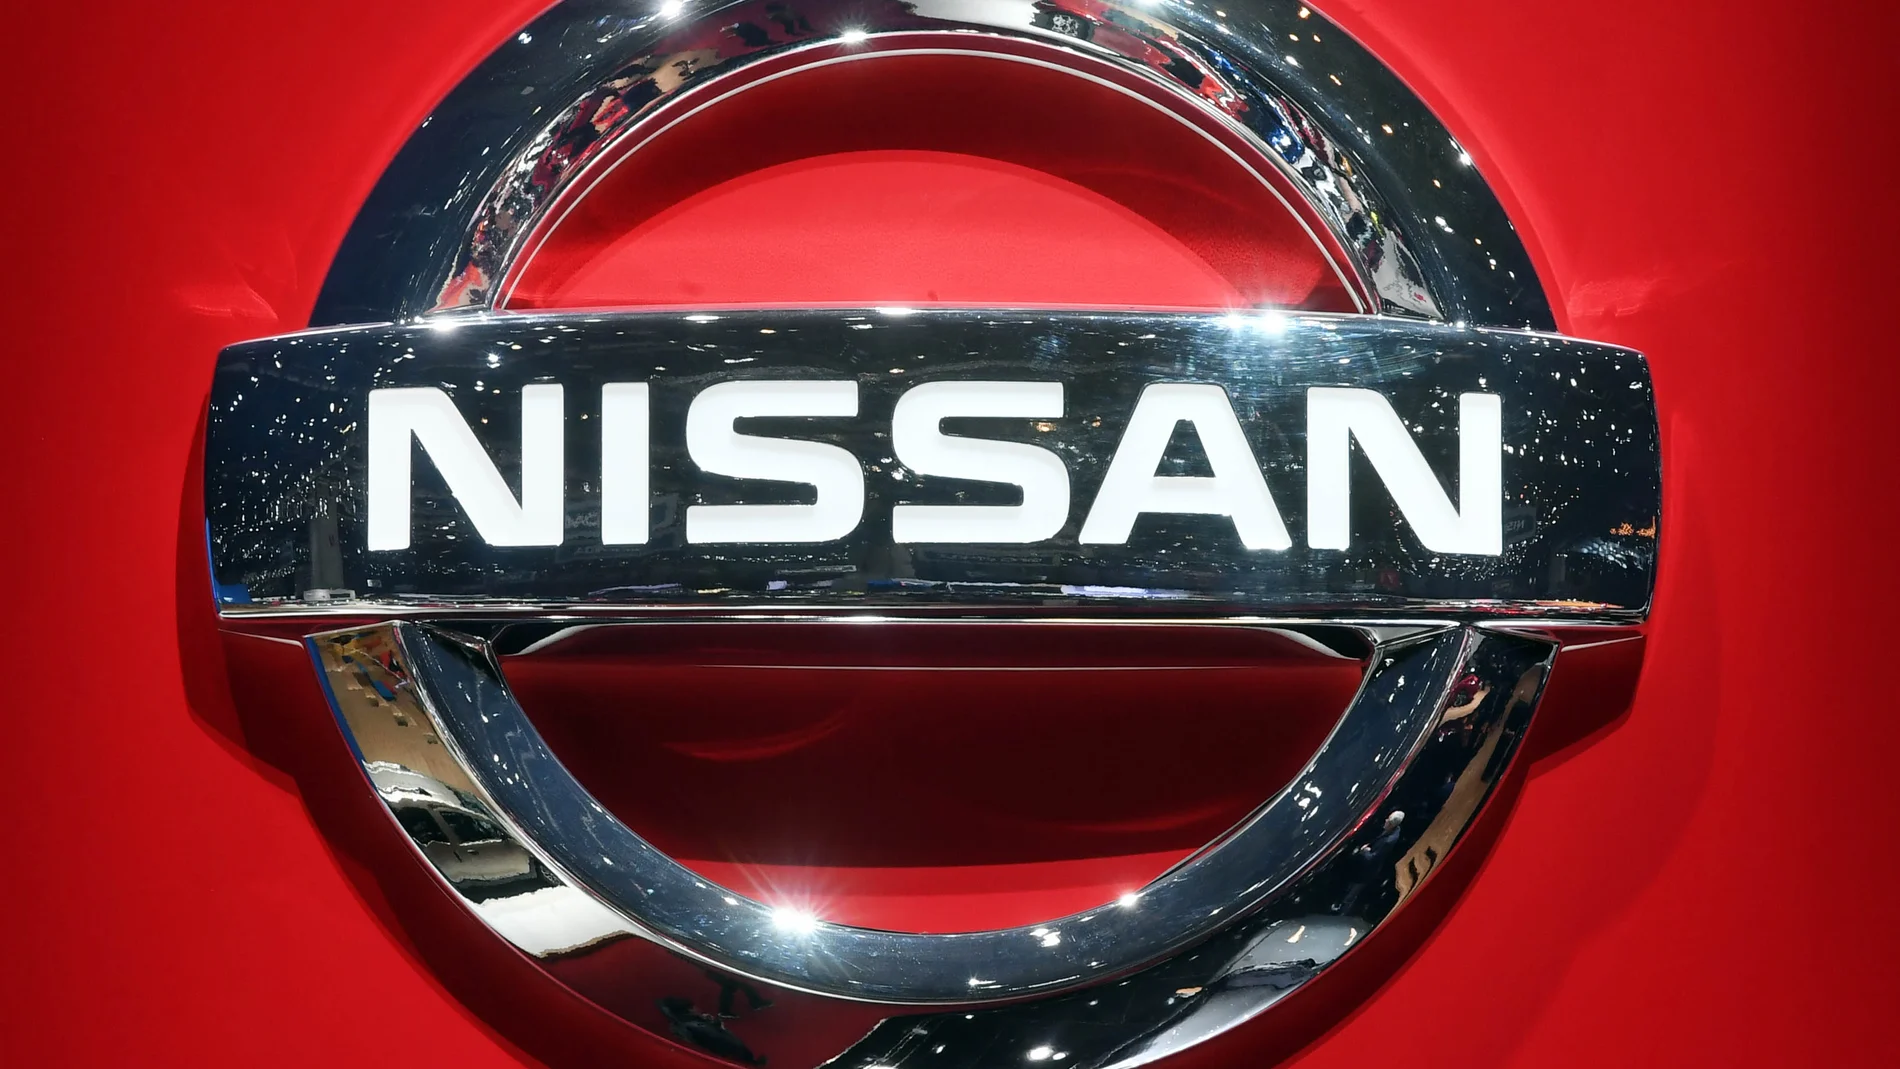 Japanese car-maker Nissan